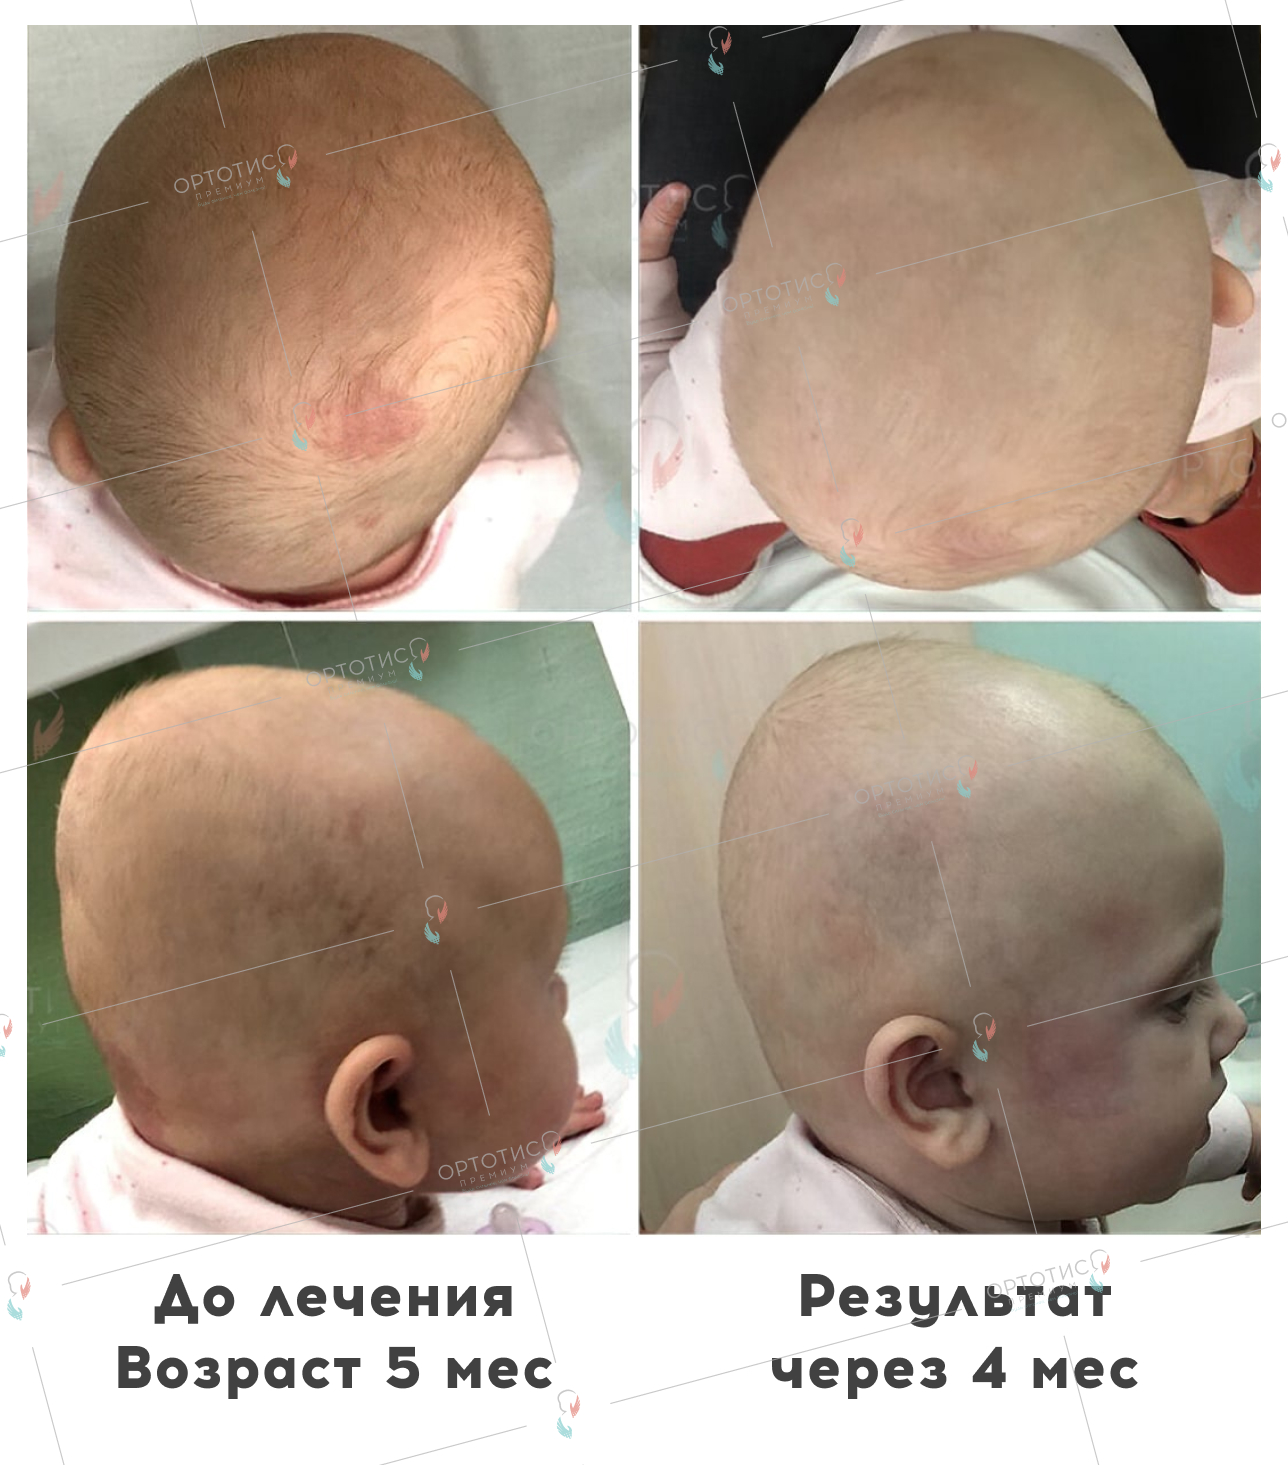 Плагиоцефалия, 4 месяцев - Ортотис Премиум